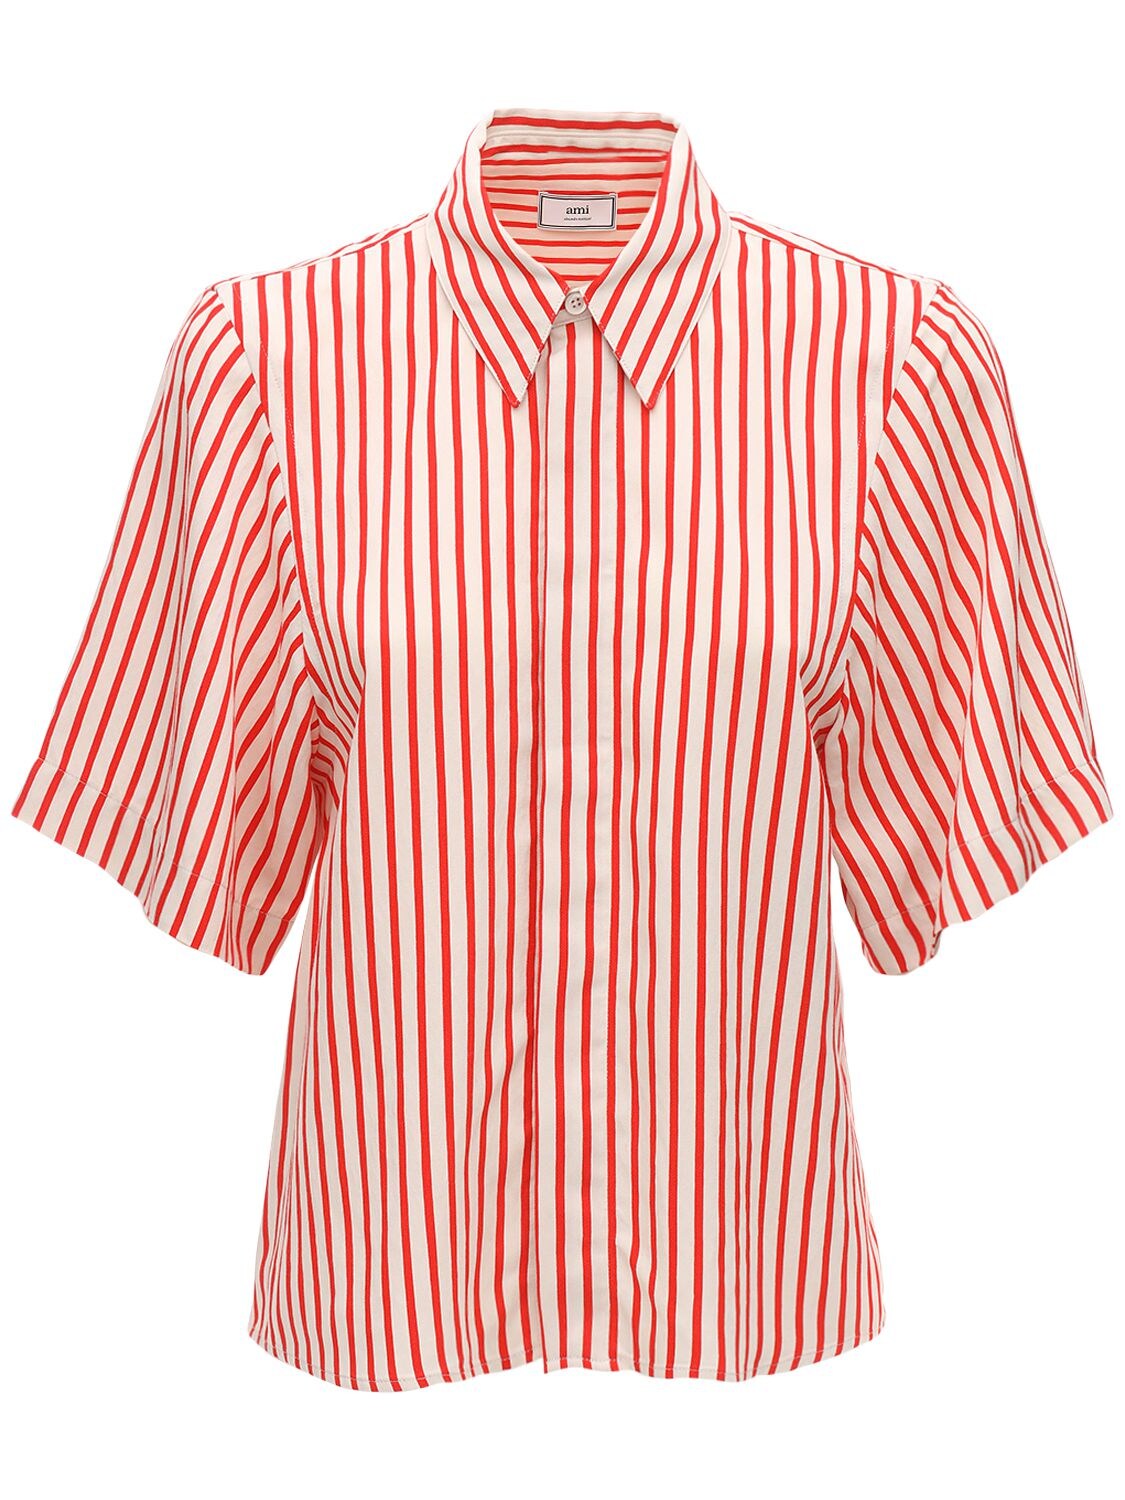 AMI ALEXANDRE MATTIUSSI 条纹粘胶纤维短袖衬衫,71IXJQ001-MTU00